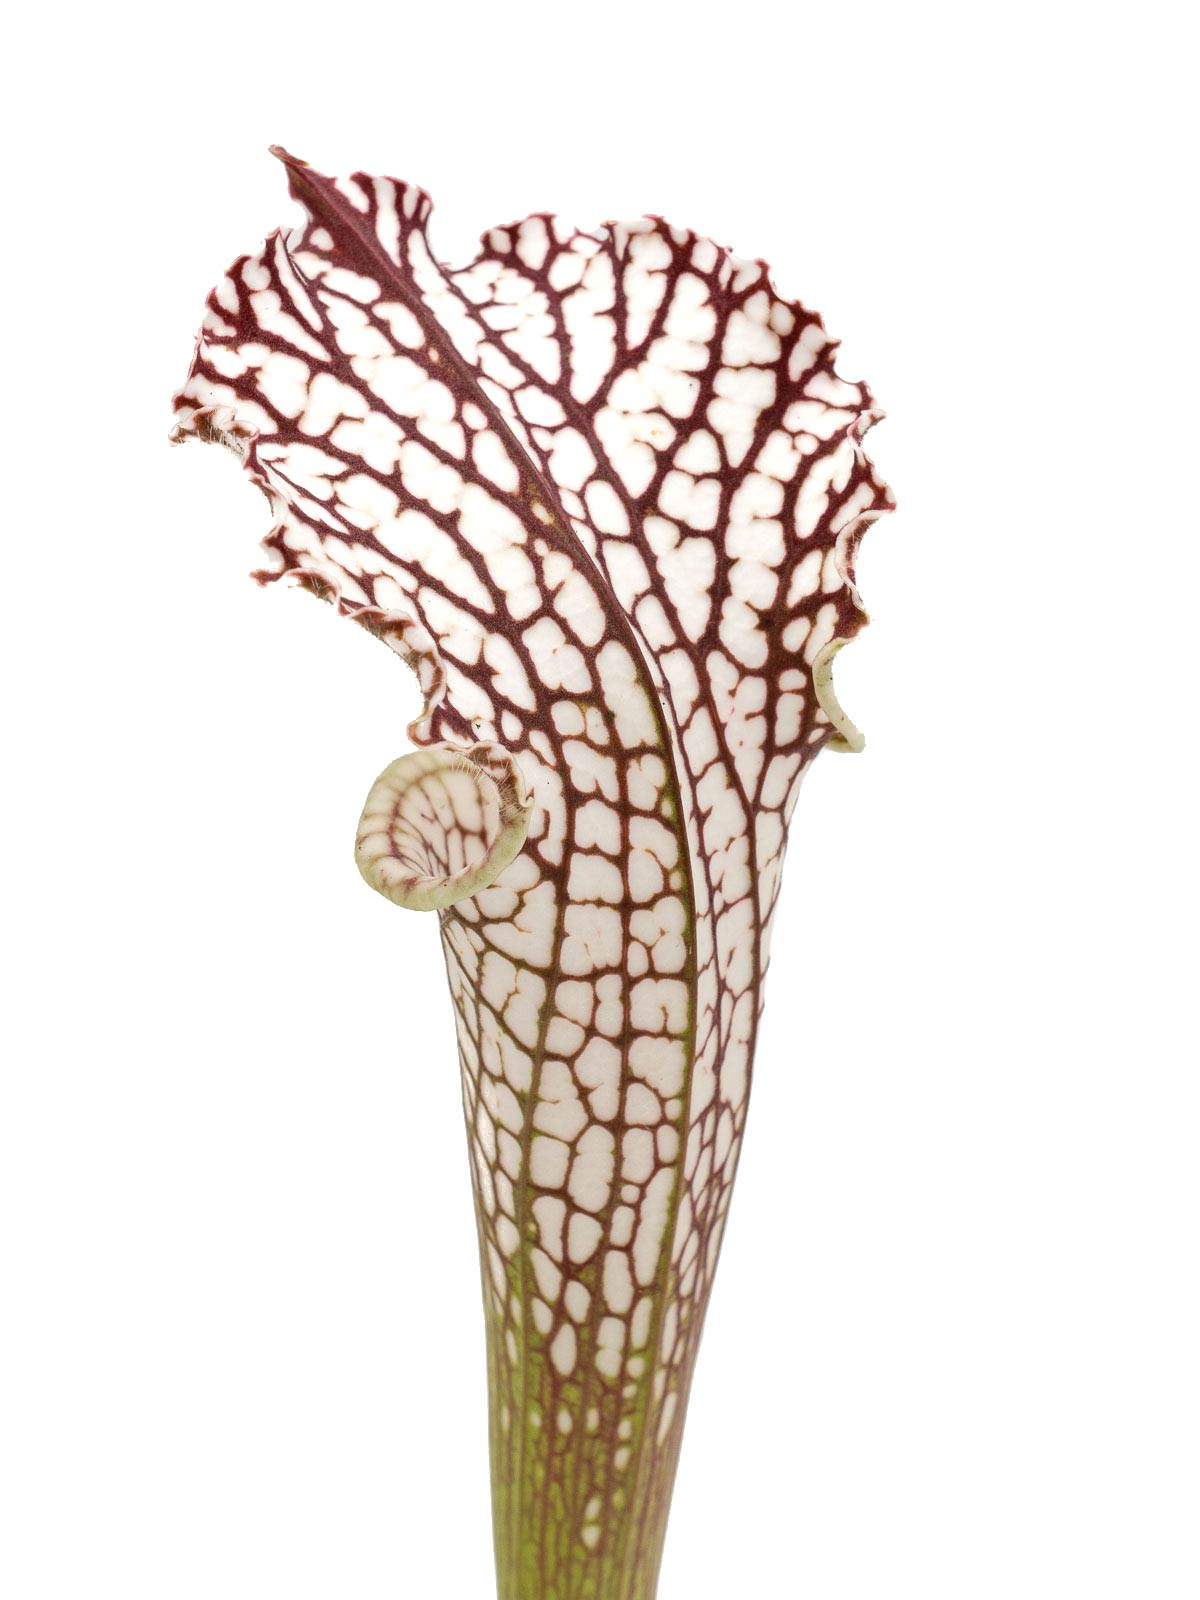 Sarracenia leucophylla - MK L06, Perdido, Baldwin County, Alabama